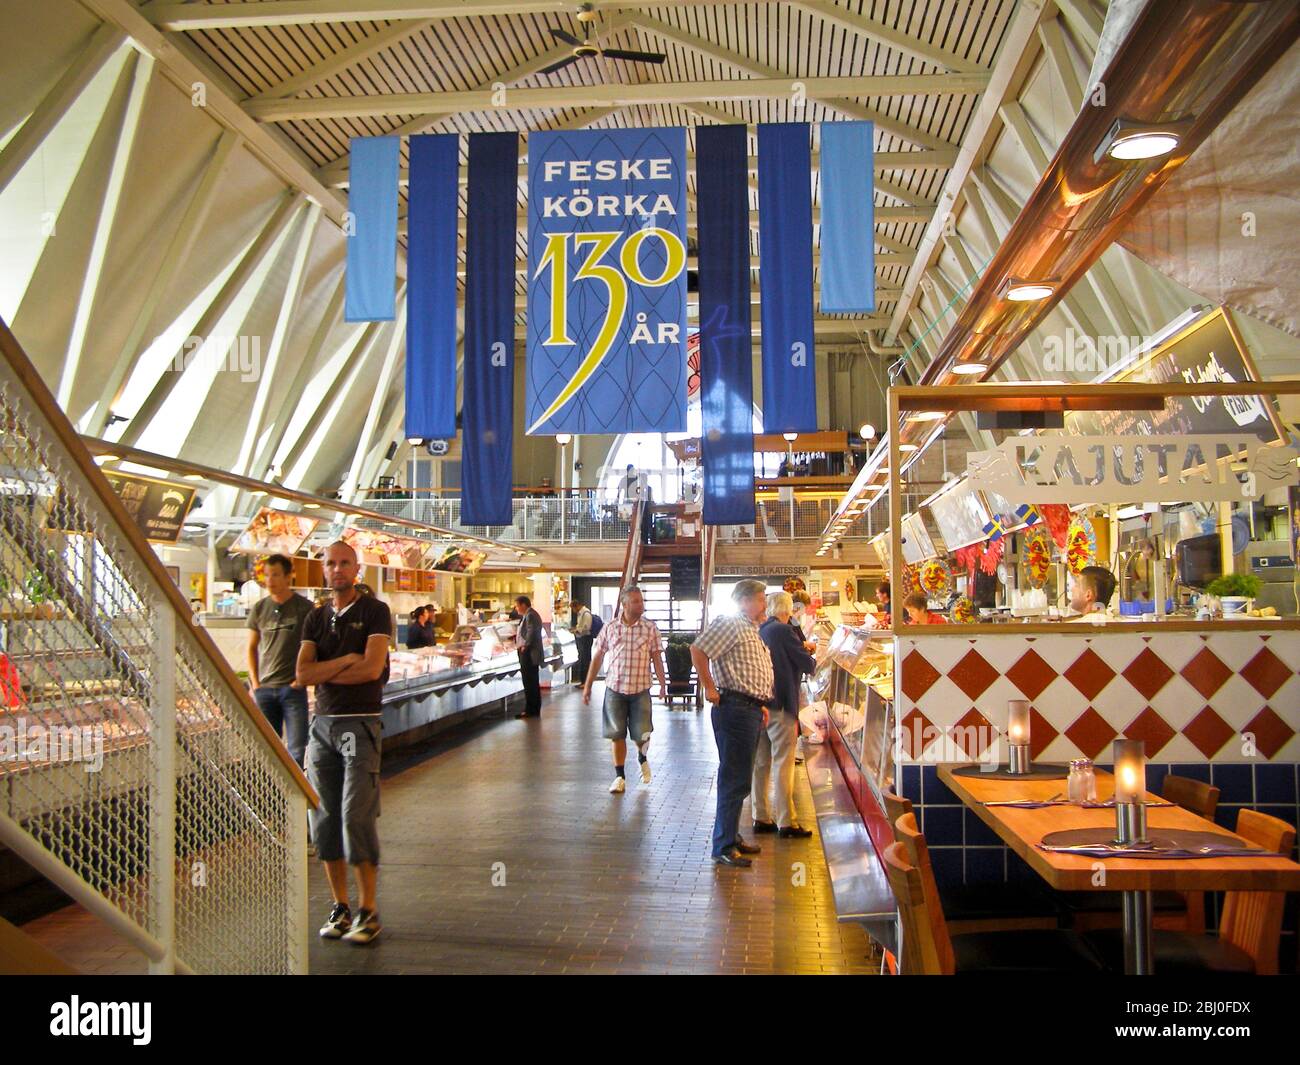 Das Innere der "Feske KÌ¦rka" (Fischkirche), dem wichtigsten Fischmarkt in Göteborg, Schweden, zeigt Fischstände und Käufer. - Stockfoto